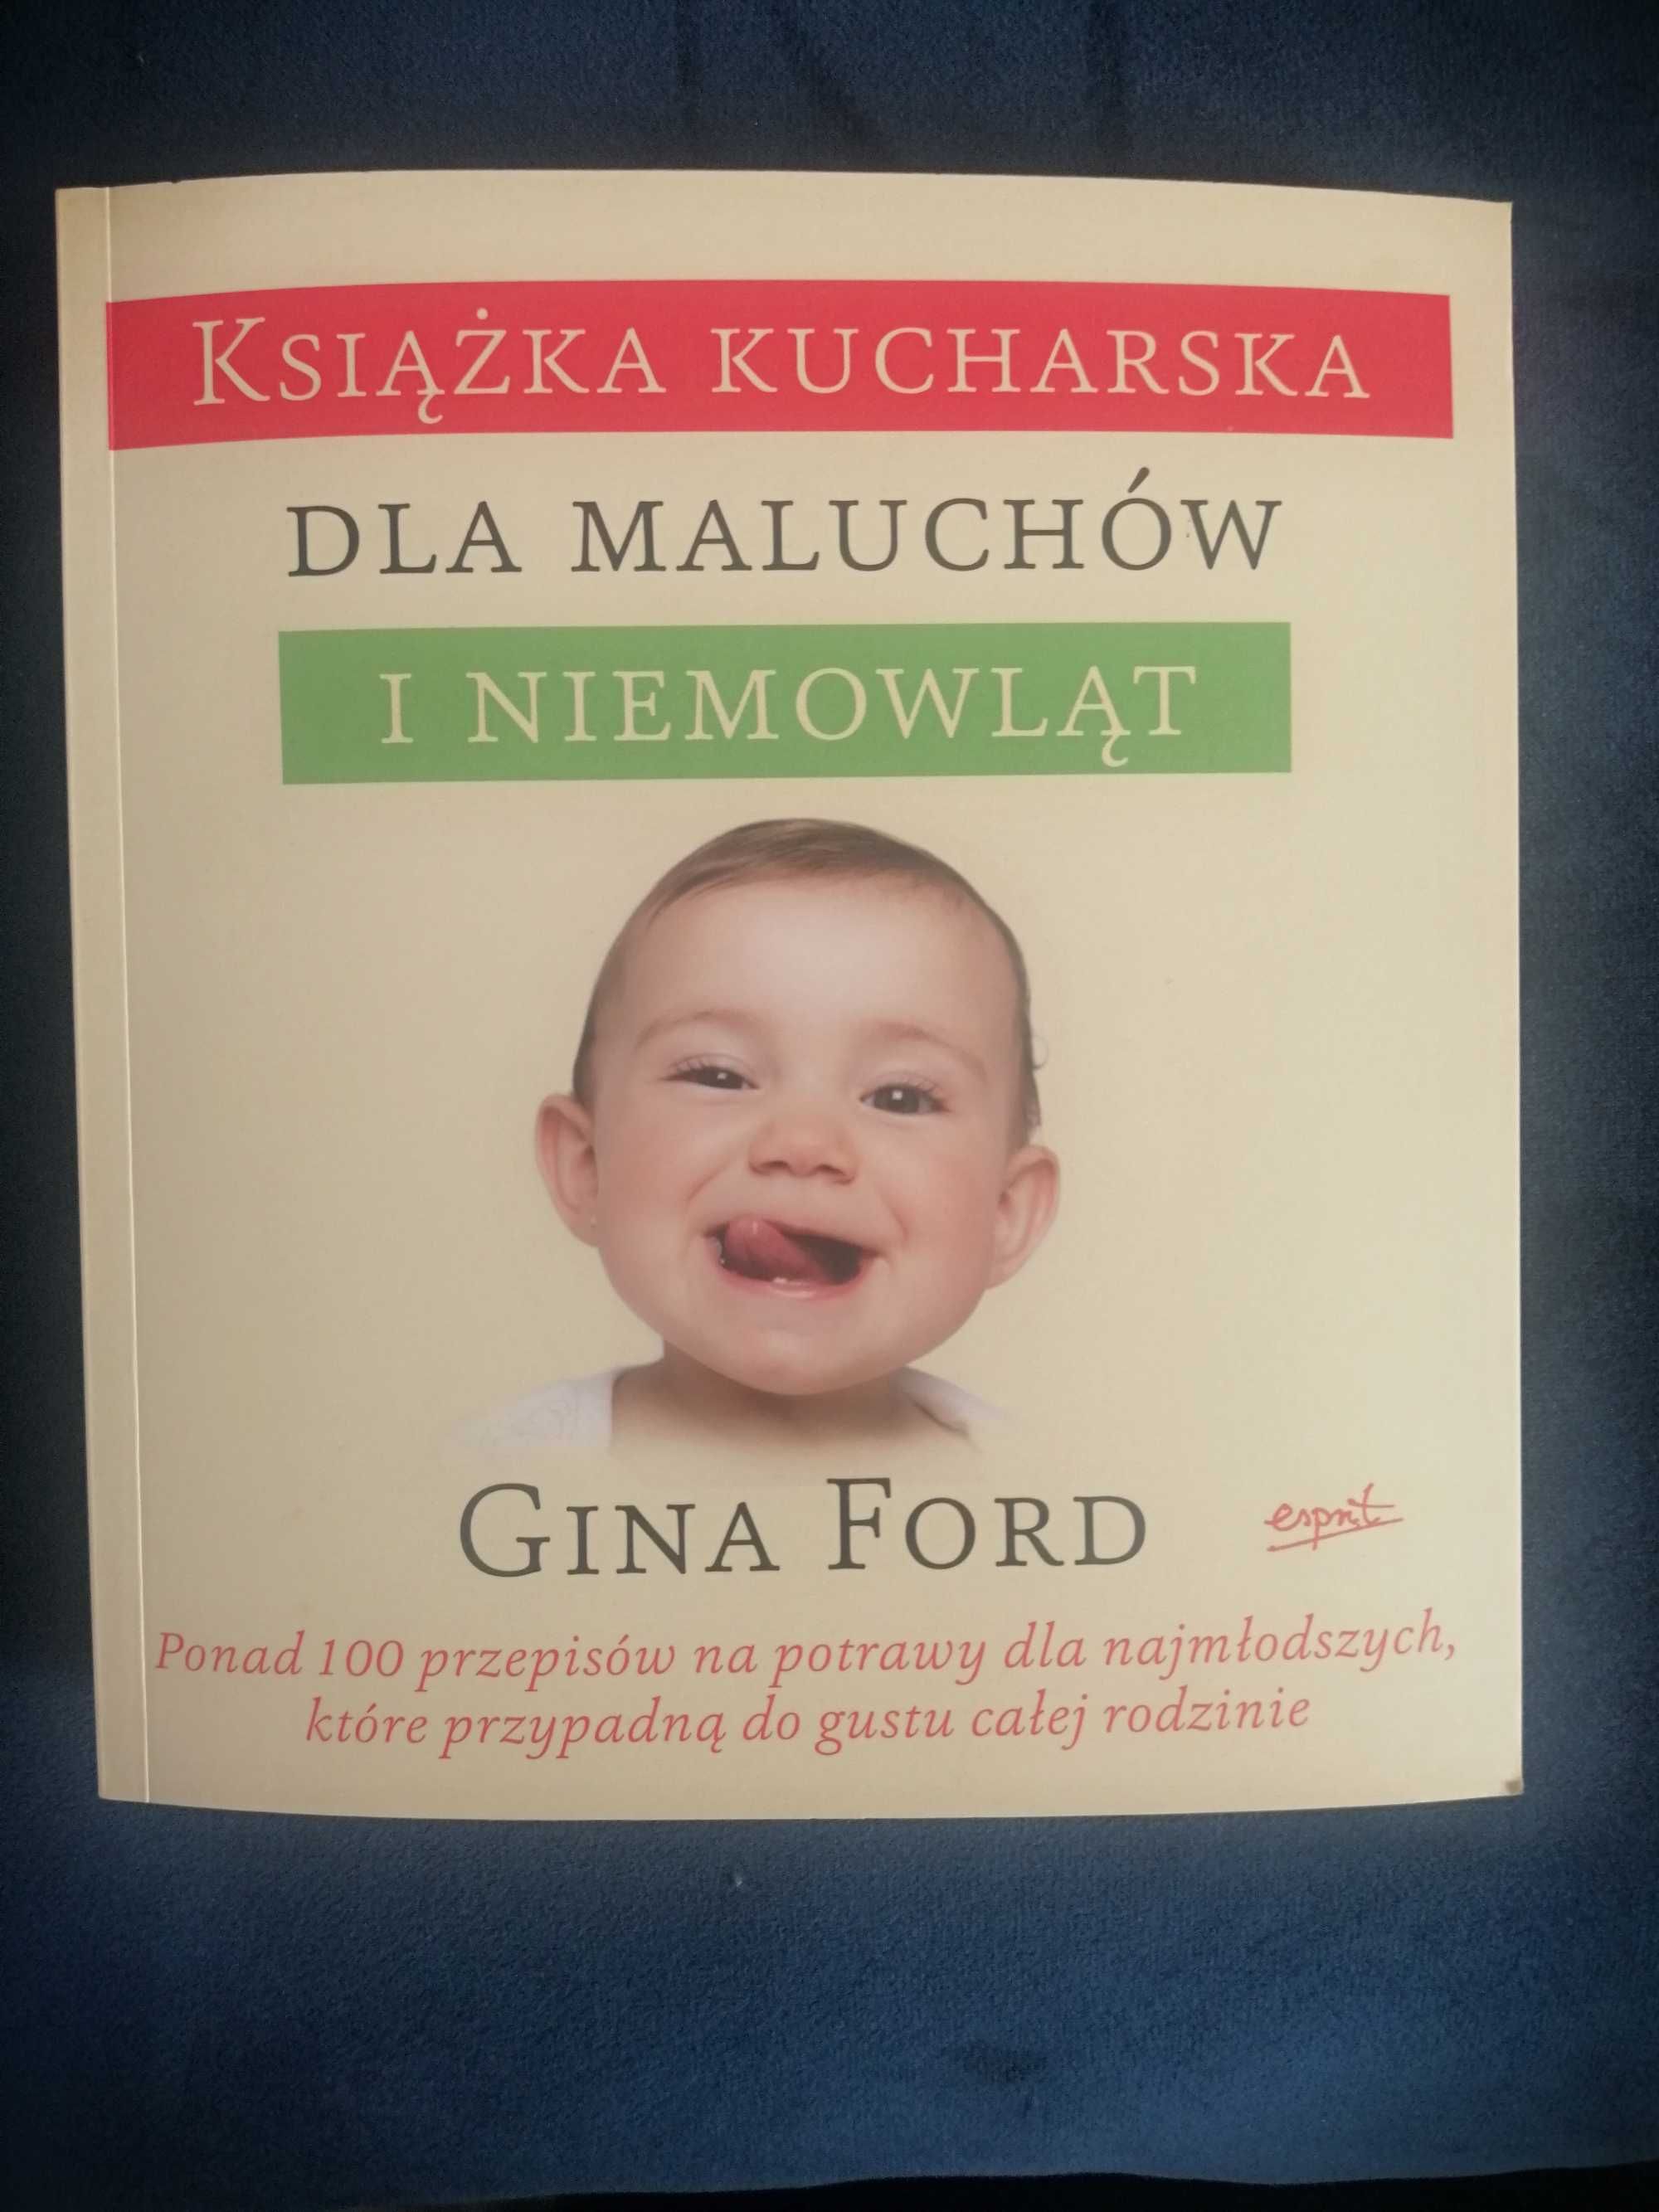 Książka kucharska dla najmłodszych Gina Ford przepisy dieta dzieci